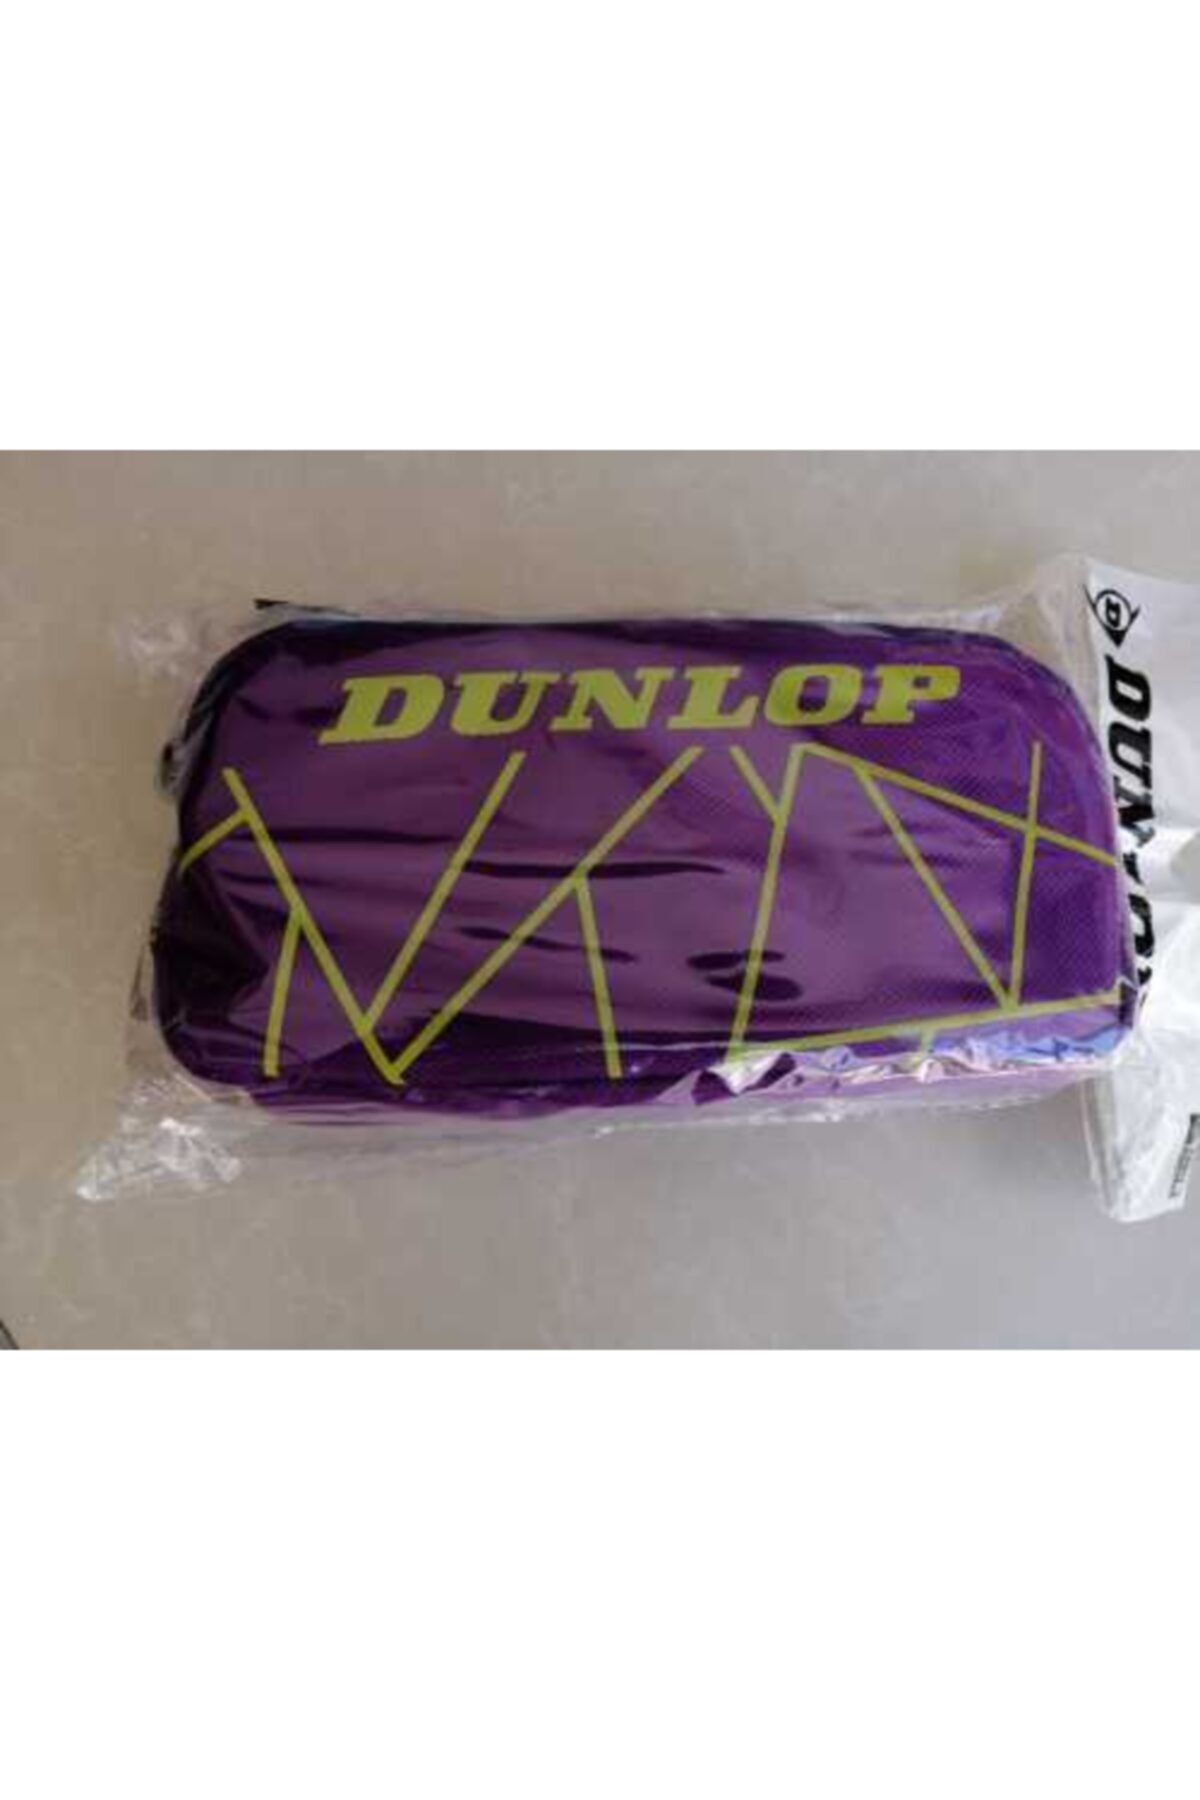 Dunlop Lisanslı Kalem Kutusu